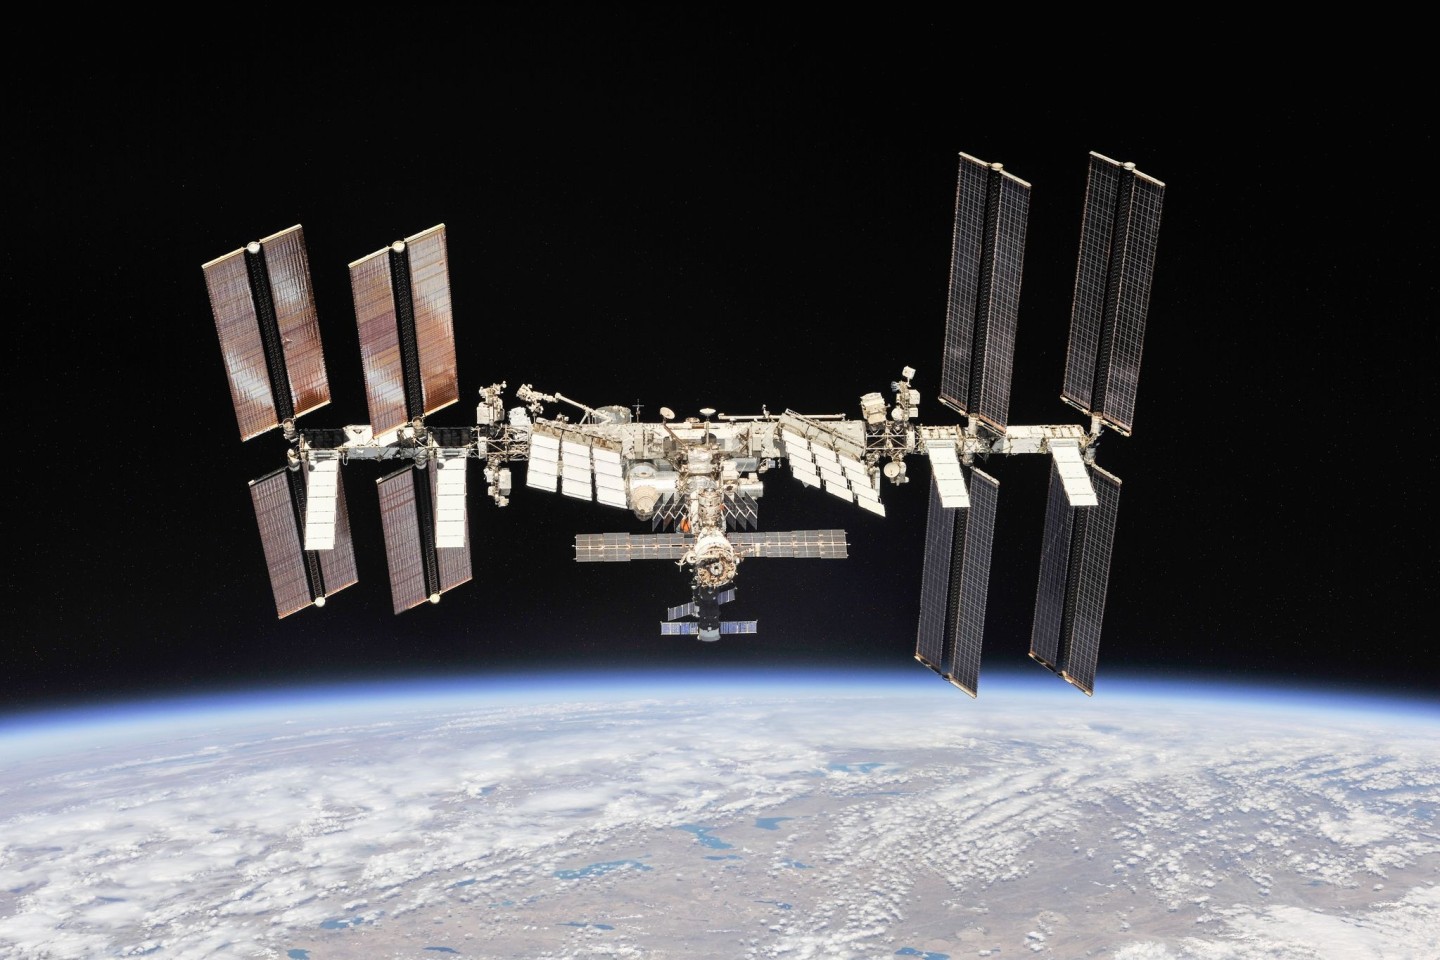 Die Internationale Raumstation auf ihrer Umlaufbahn um die Erde.